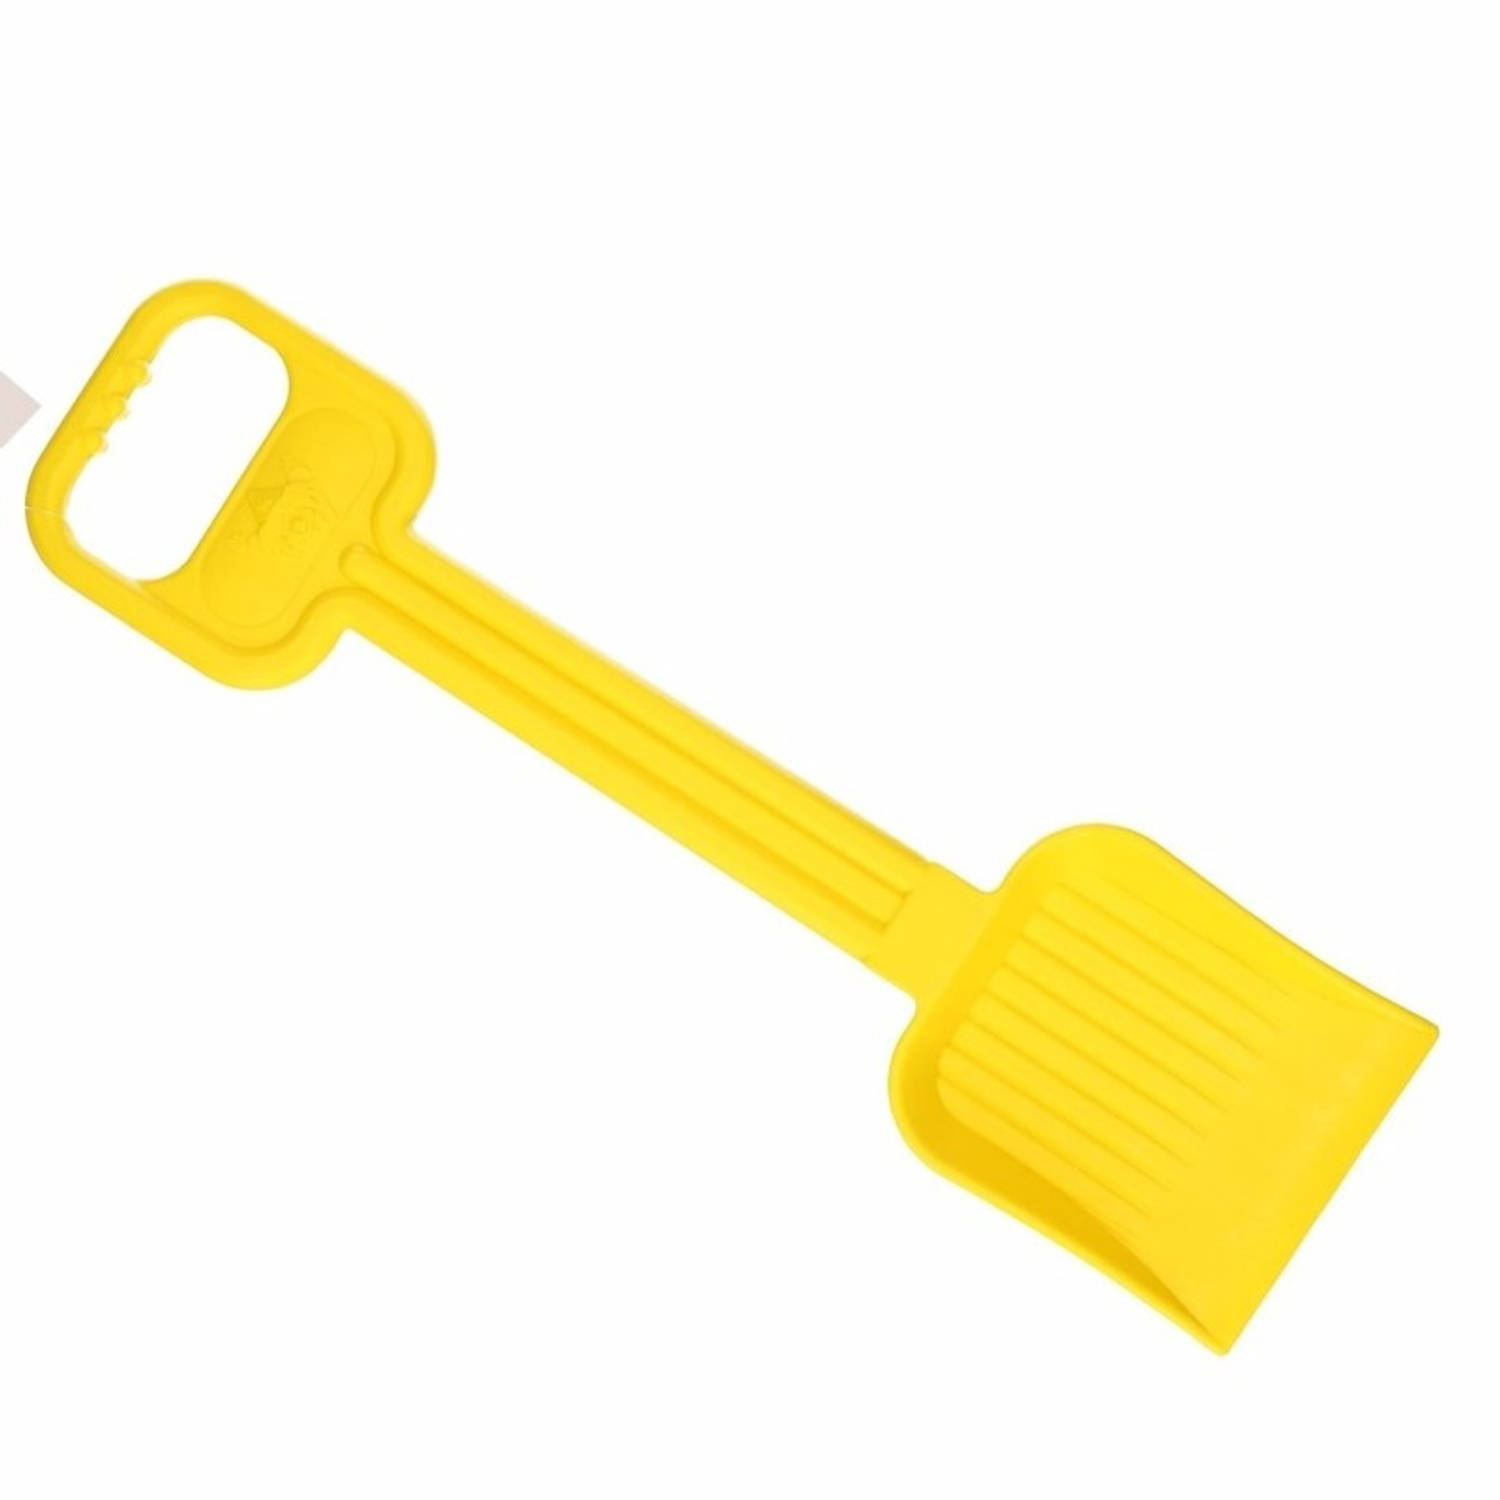 Plastic zand schep 54 cm geel Speelgoedschepjes